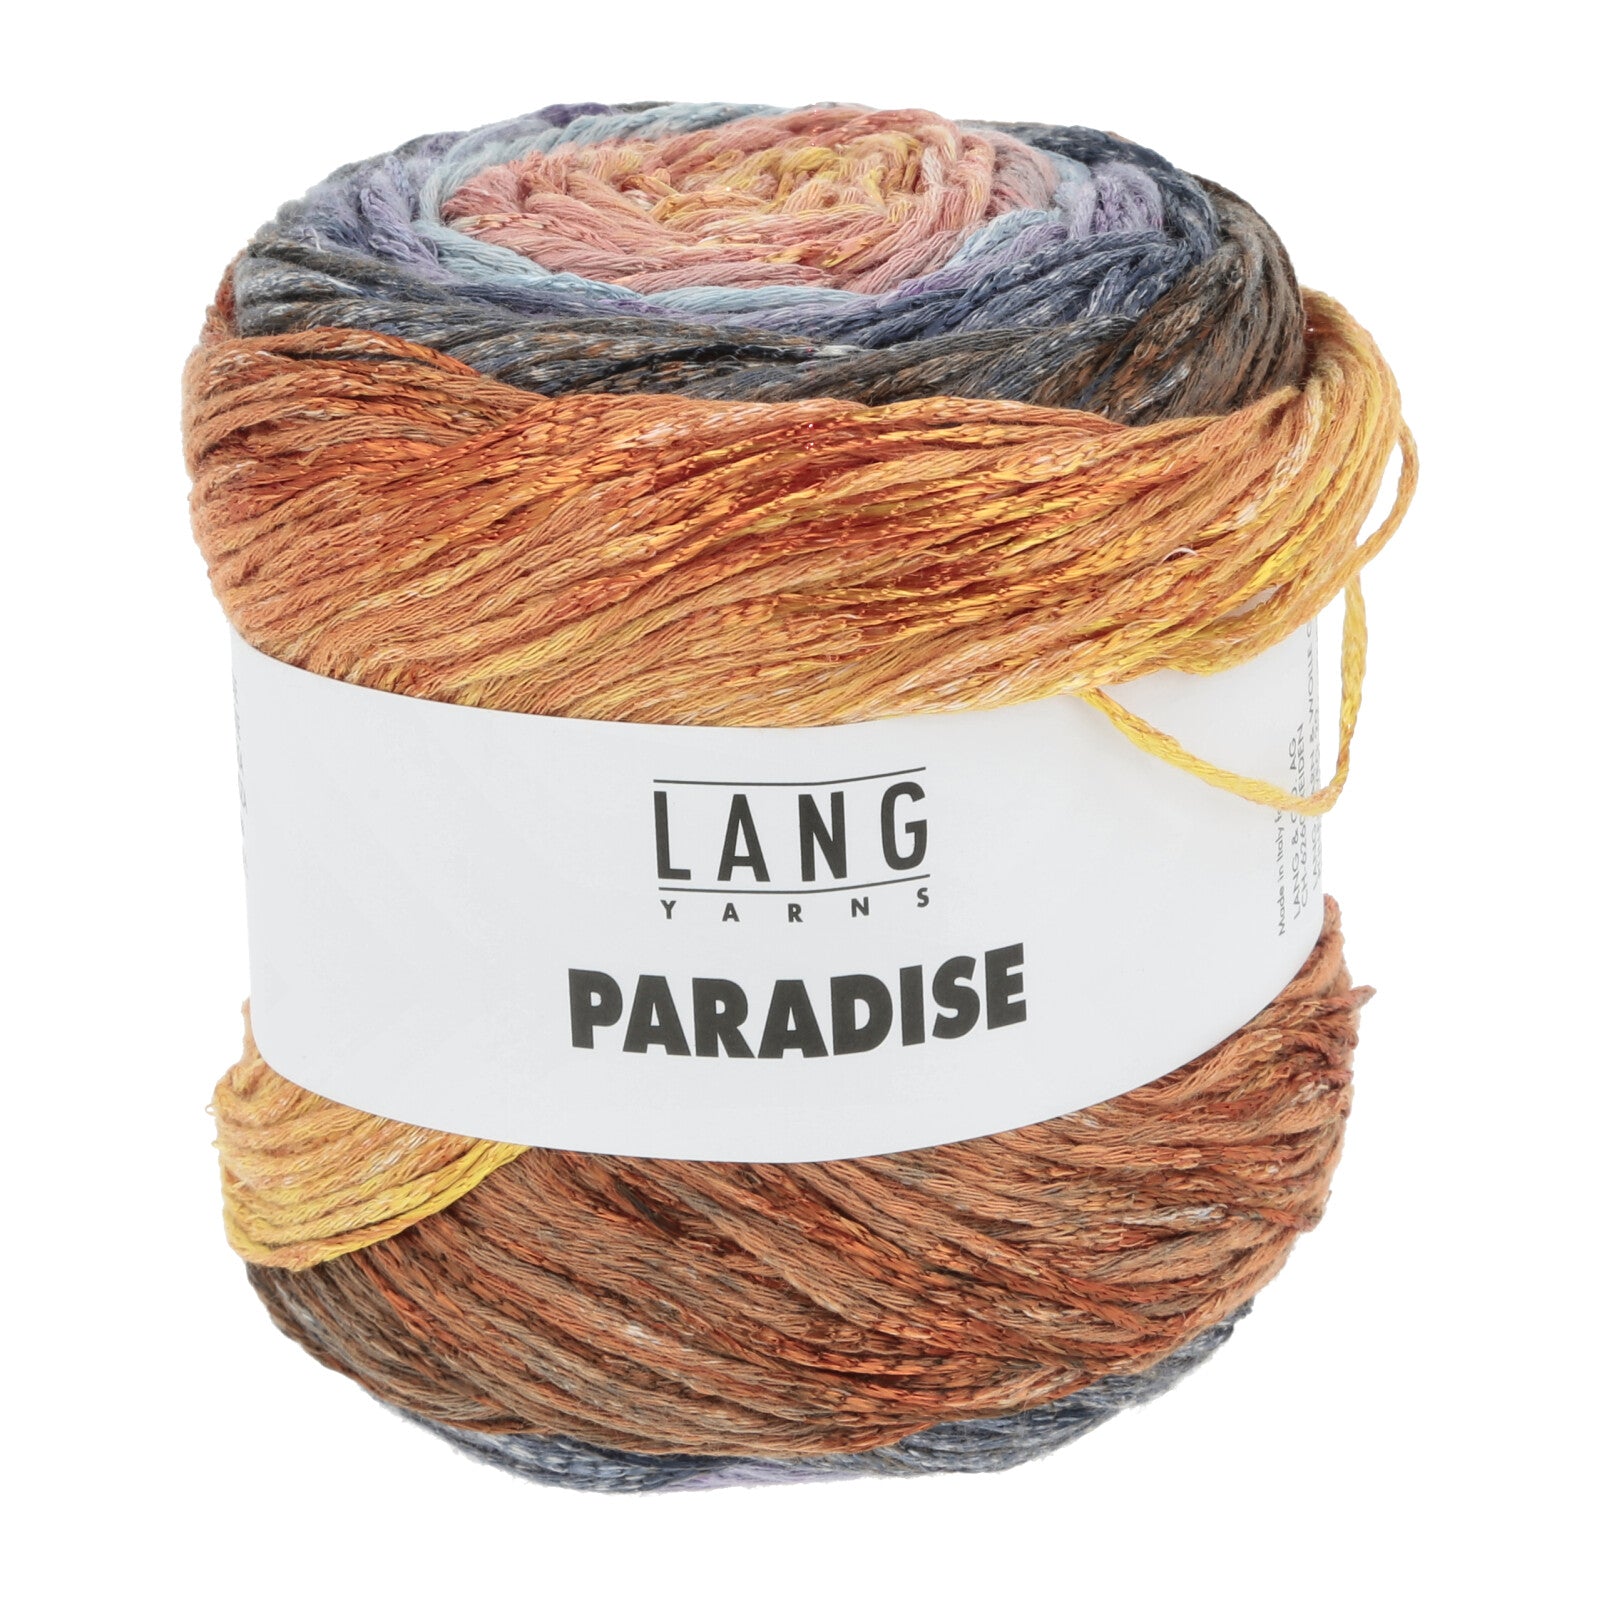 Lang Yarns Paradise yarn color 59